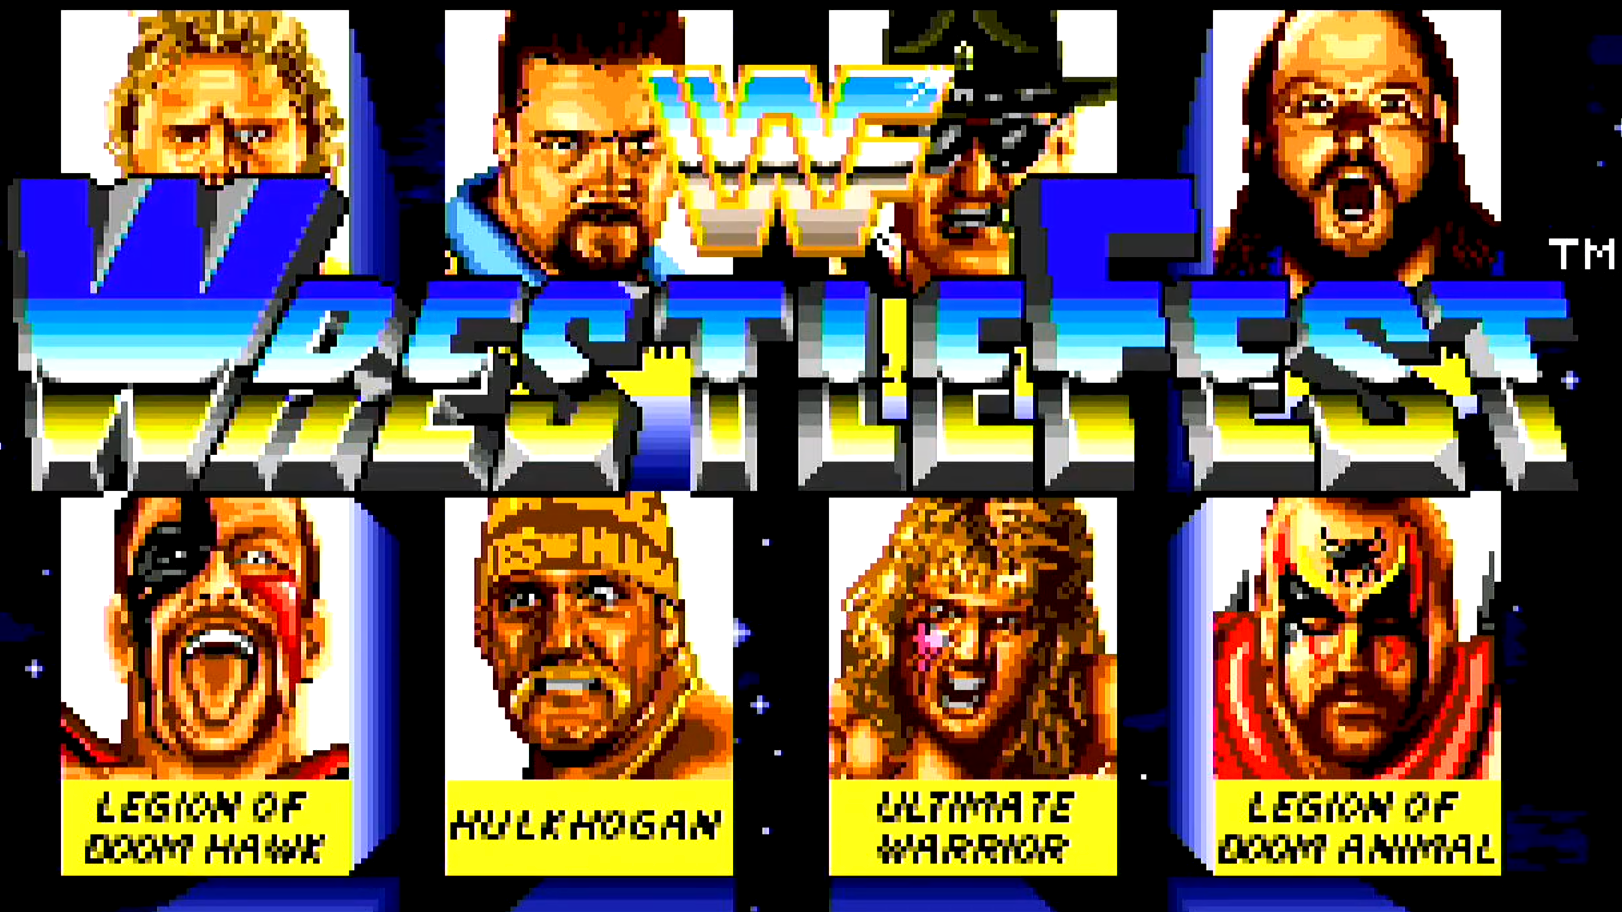 WWF Wrestlefest Arcade